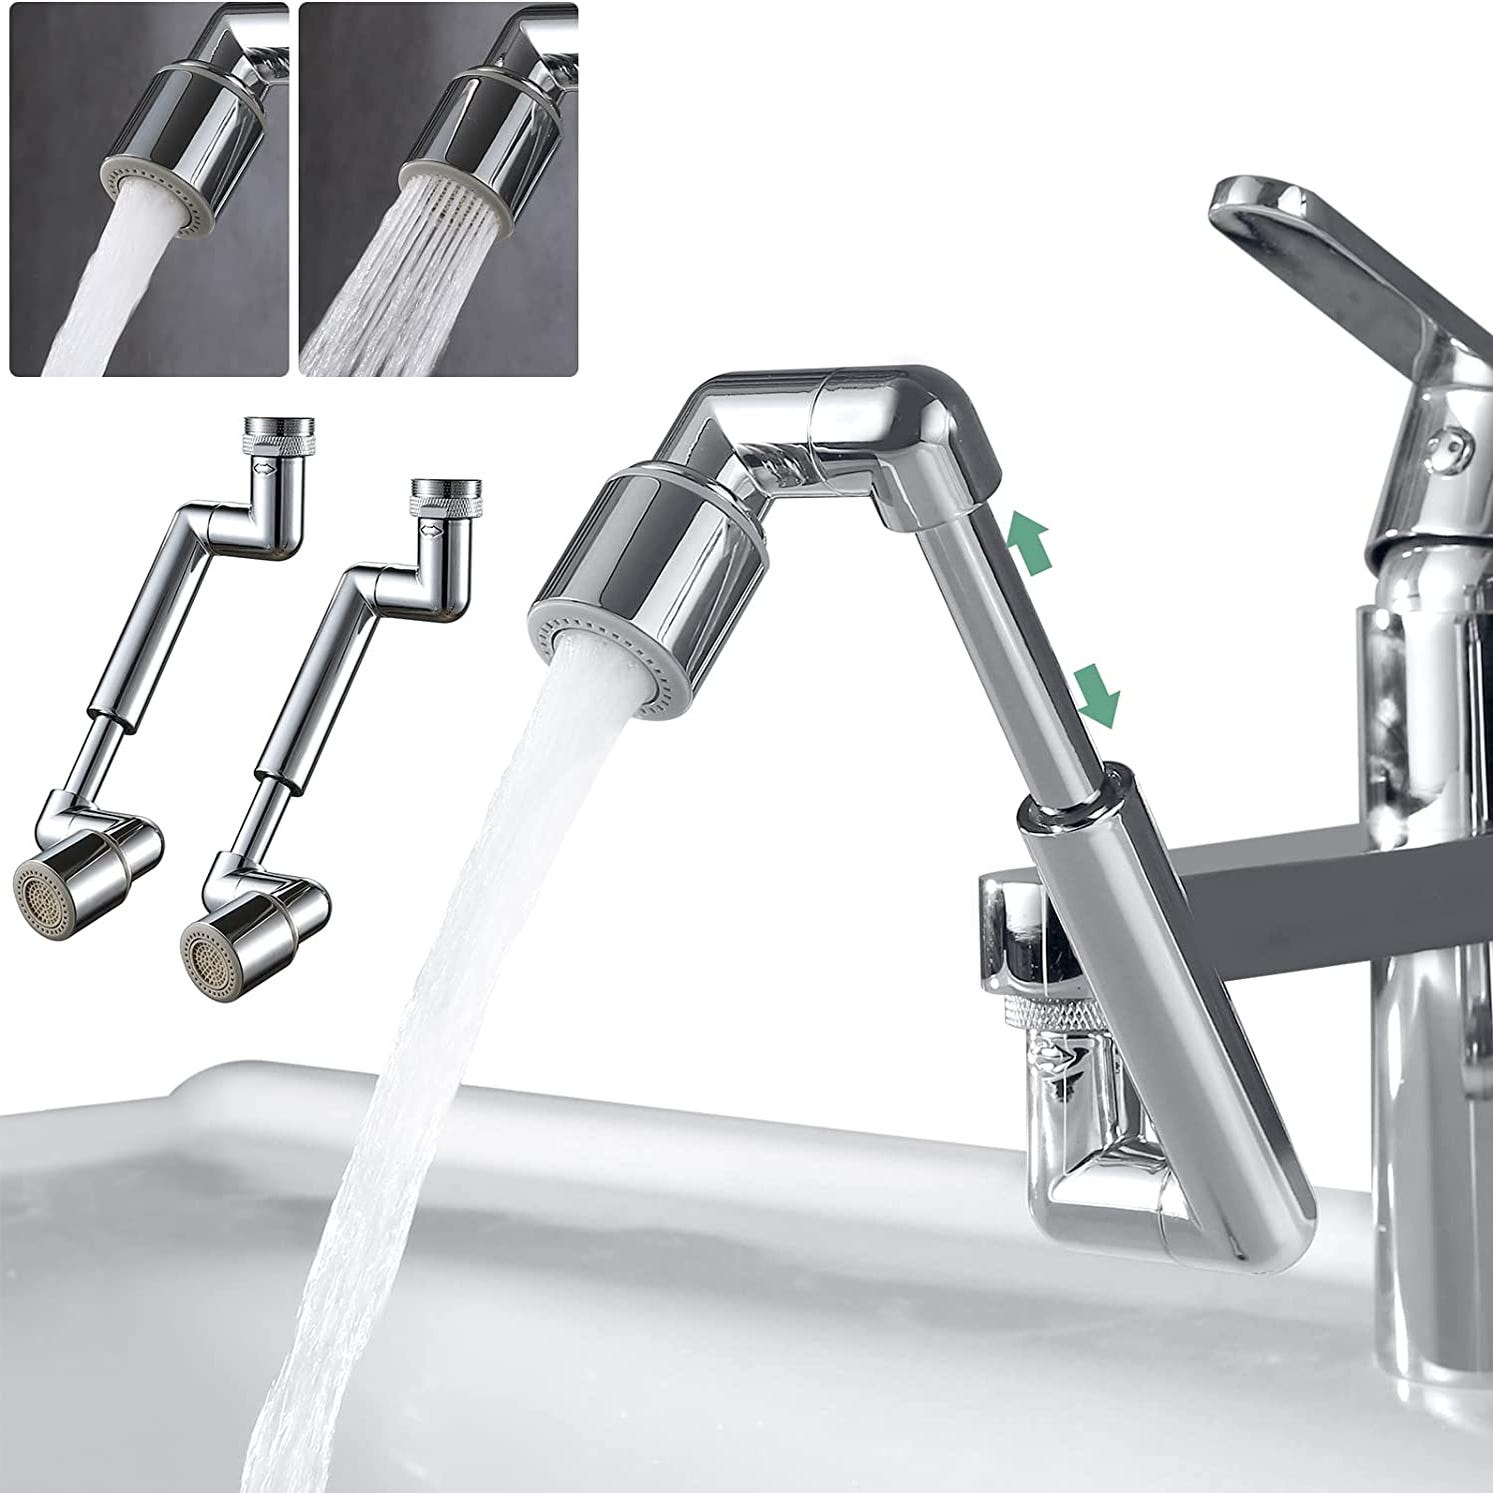 Rallonge de robinet rotative universelle pour évier de cuisine, bras  robotique, aérateur, adaptateur d'extension, 1080 résistant - AliExpress